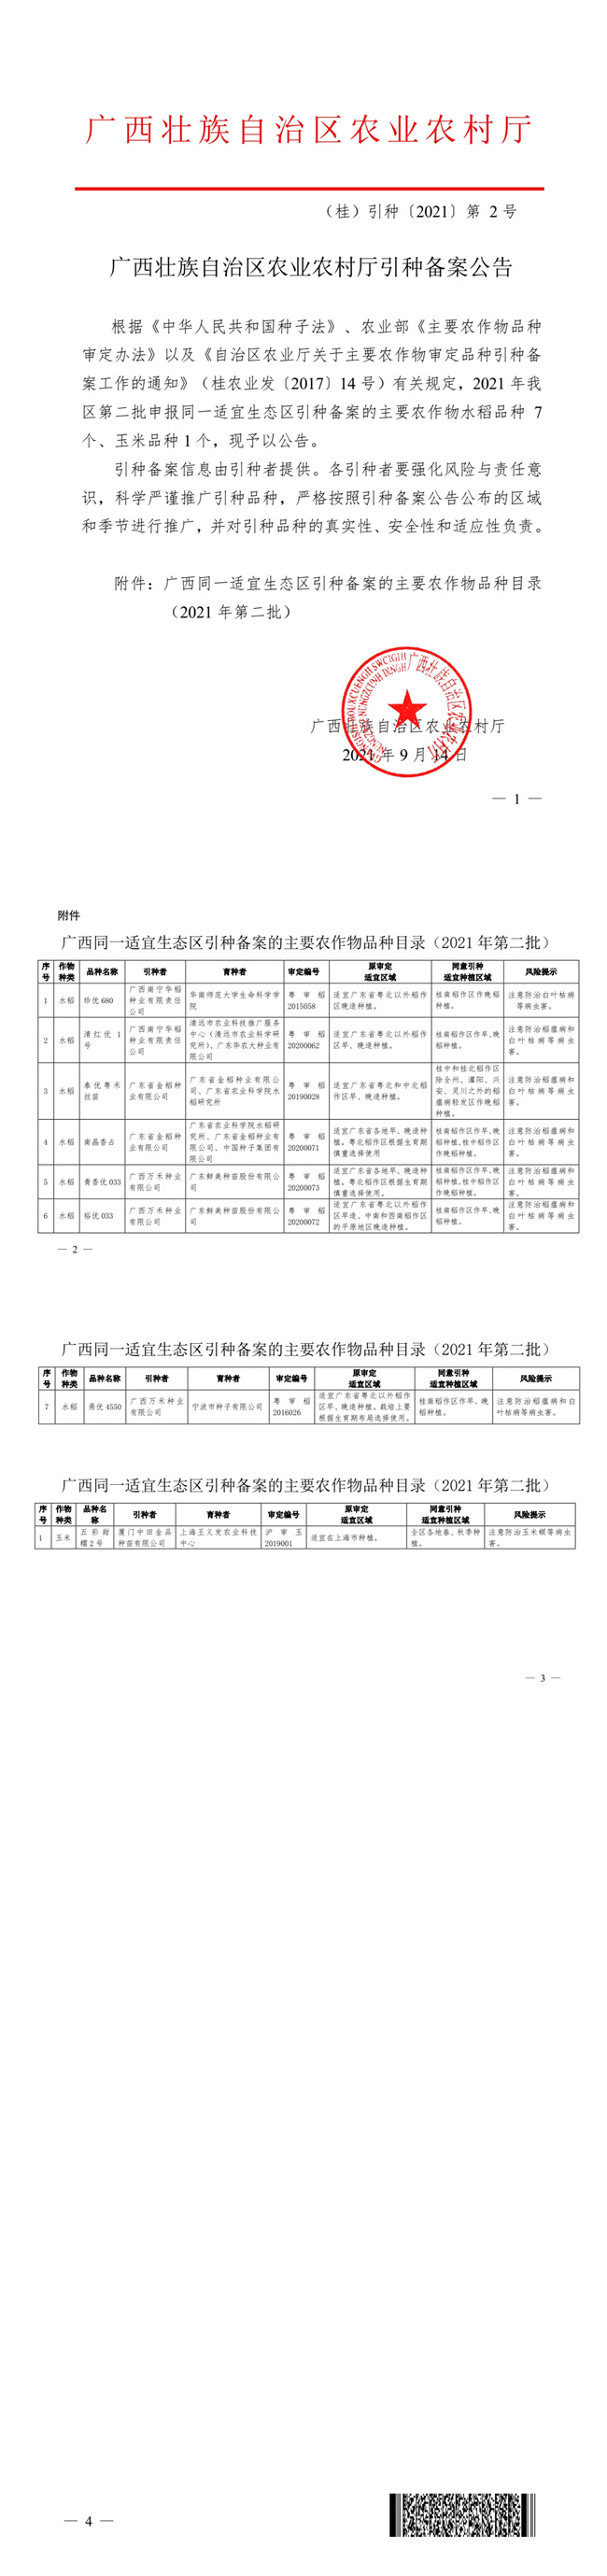 广西壮族自治区农业农村厅引种备案公告（2021年第2批）